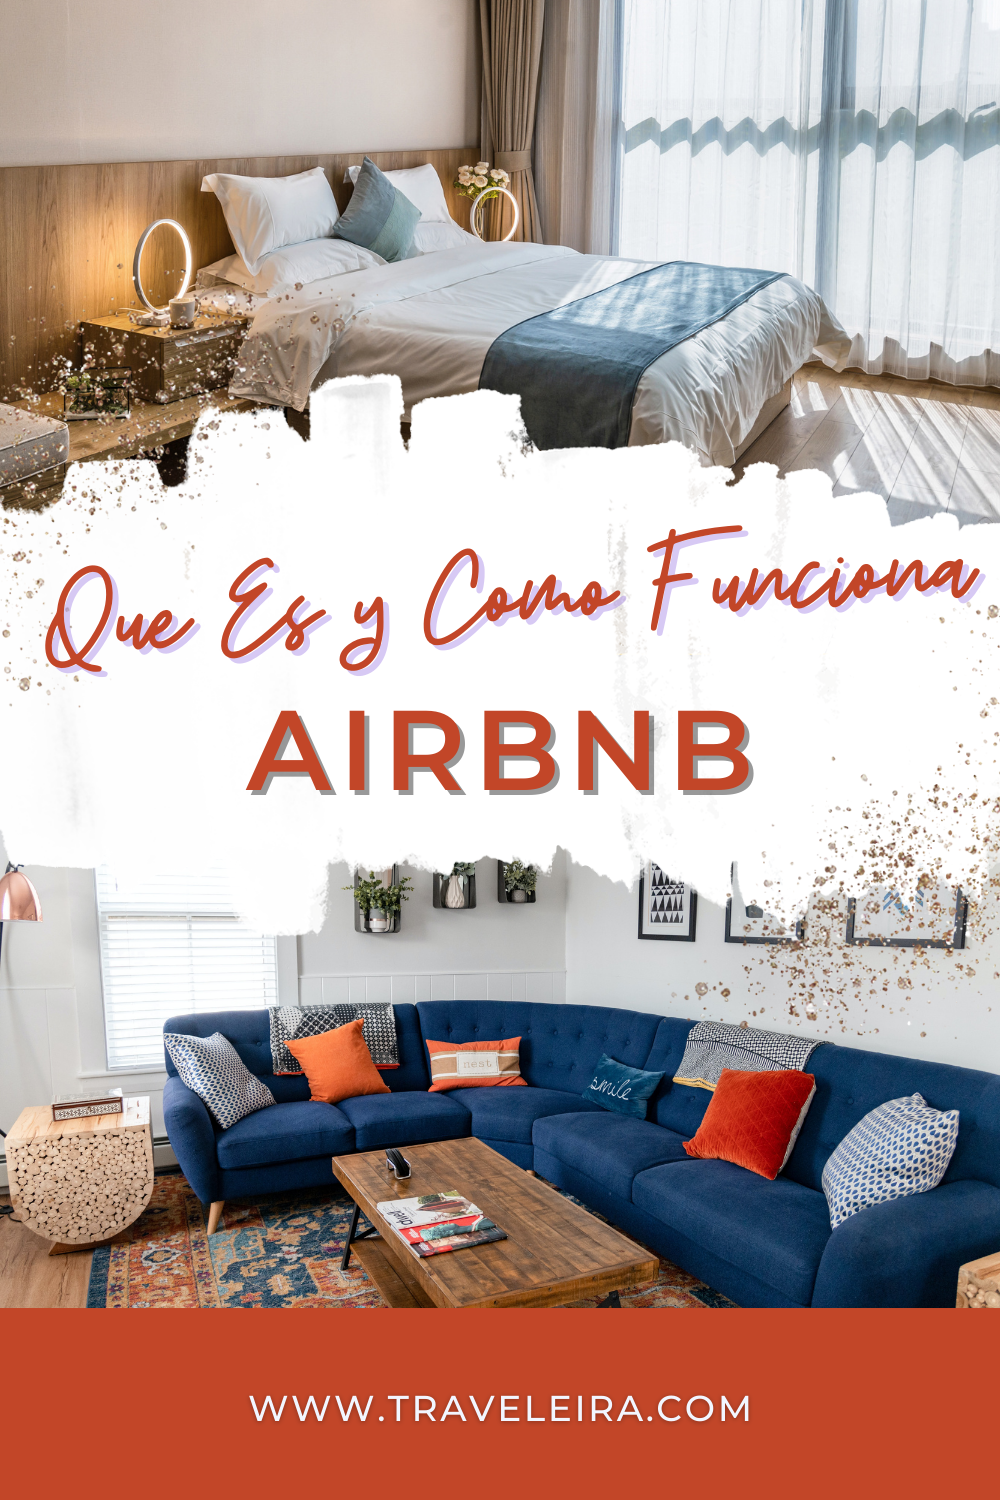 ¿Cuando usar Airbnb? ¿Que es airbnb? En este post discutimos Airbnb que es y como funciona. Maximiza tus reservas Airbnb.